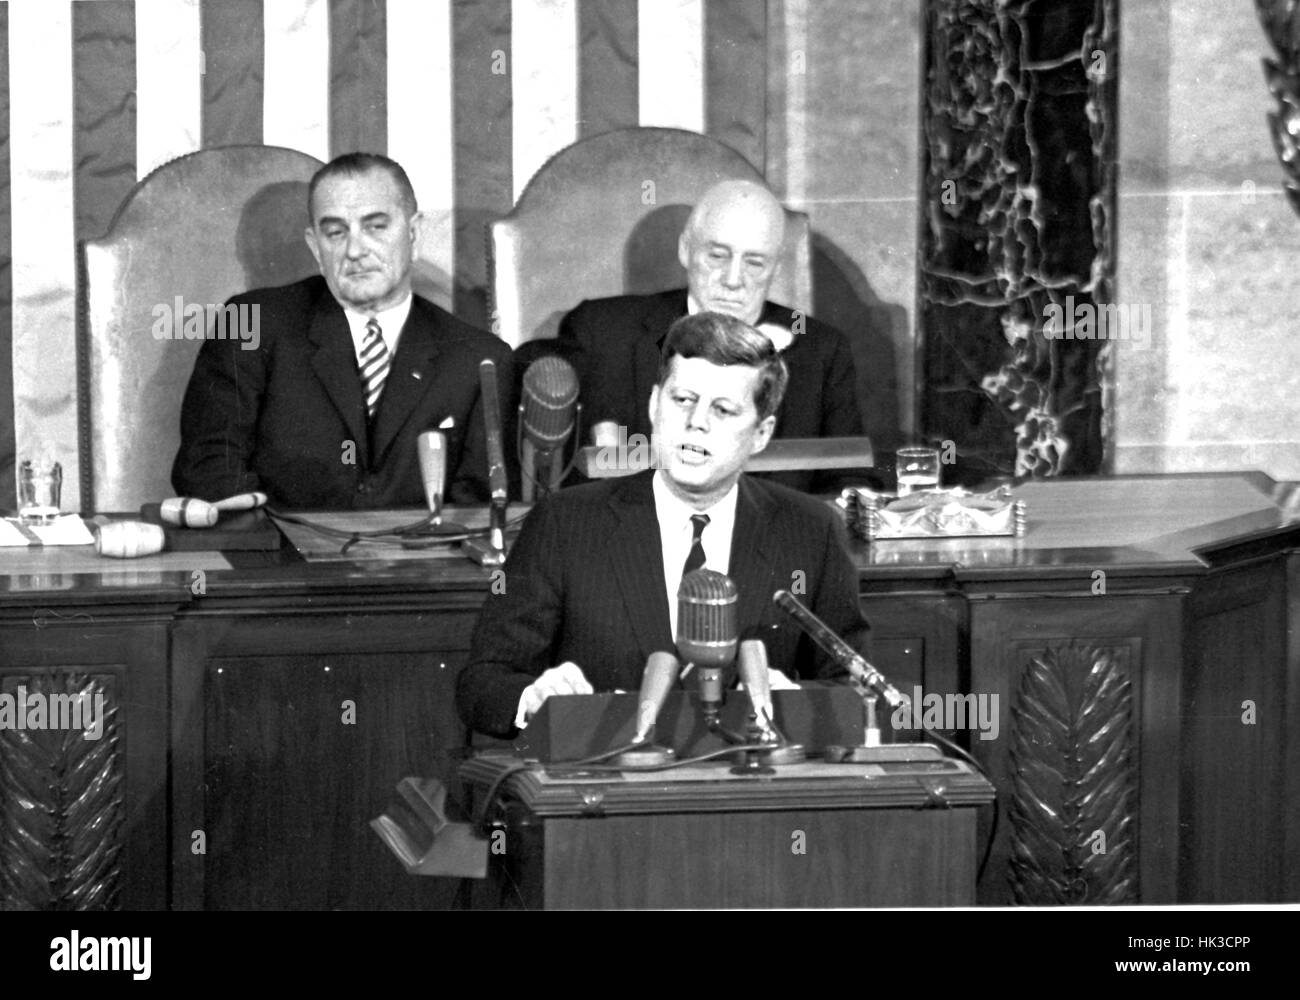 El Presidente de Estados Unidos, John F. Kennedy, esbozó su visión para la exploración espacial tripulada a una sesión conjunta del Congreso de los Estados Unidos, en Washington, DC, el 25 de mayo de 1961, cuando declaró, "...creo que esta nación debería comprometerse a lograr t Foto de stock